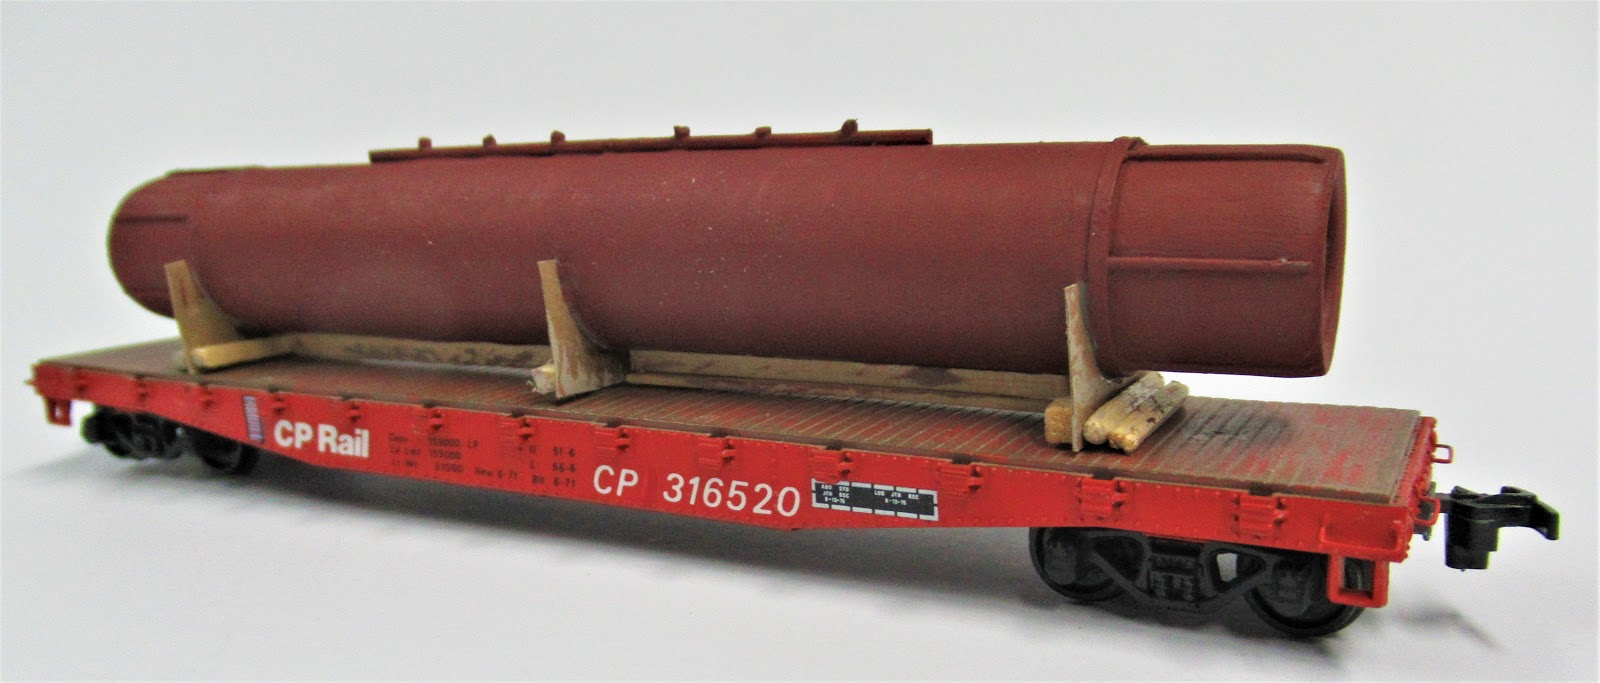 5329 NUOVO Traccia h0-General-Purpose Flatcar Trailer-Train ottx 